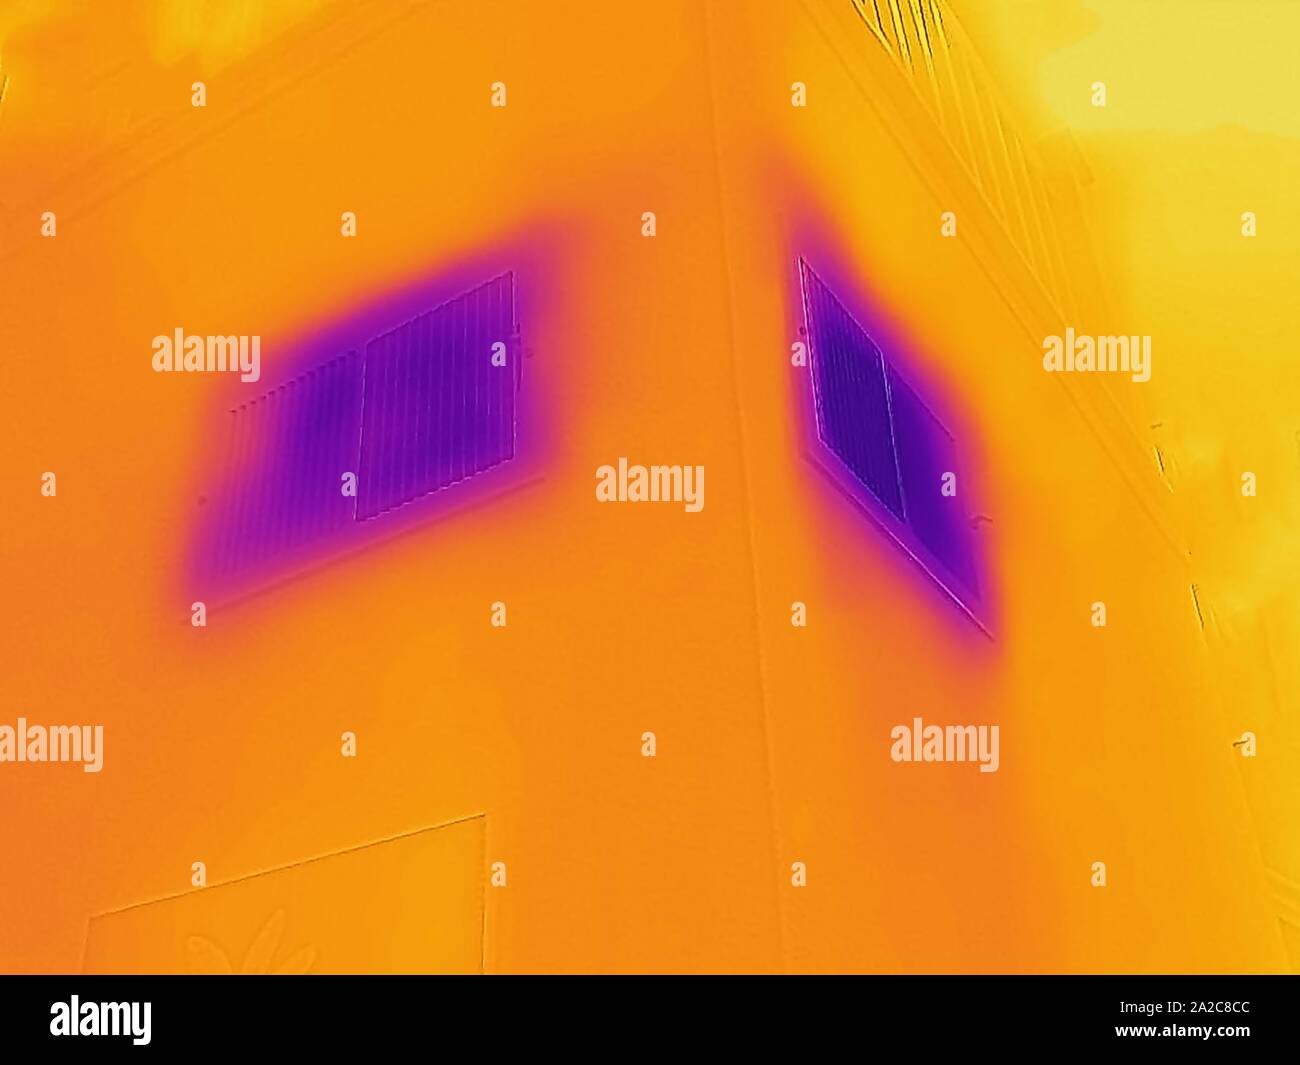 Thermografiebild der Wärmebildkamera mit Lichtbereichen, die höheren Temperaturen entsprechen und Kaltluft zeigen, die von der Heizungs-, Lüftungs- und Klimatisierungseinheit im Haushalt, San Ramon, Kalifornien, am 2. September 2019, erzeugt wird. () Stockfoto